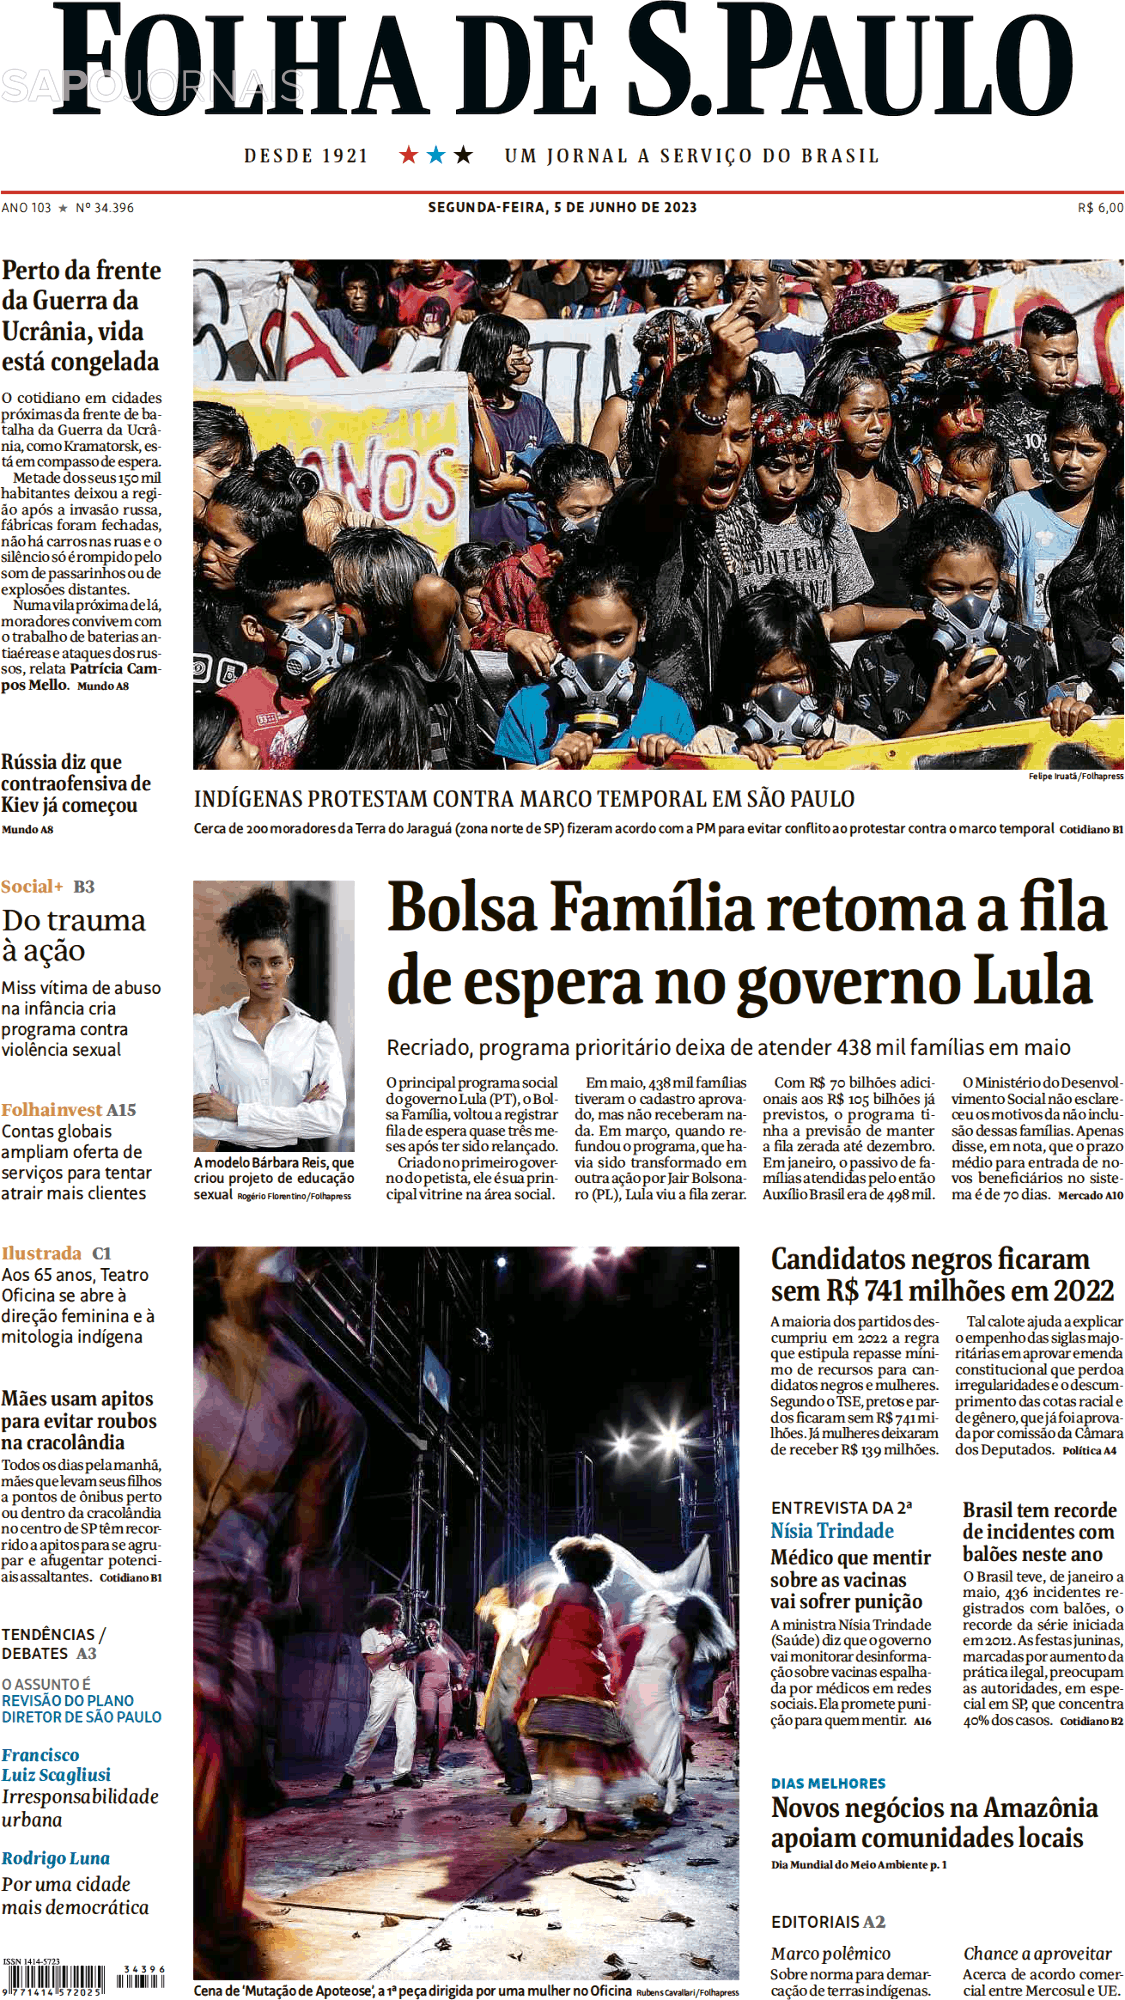 Folha de S. Paulo